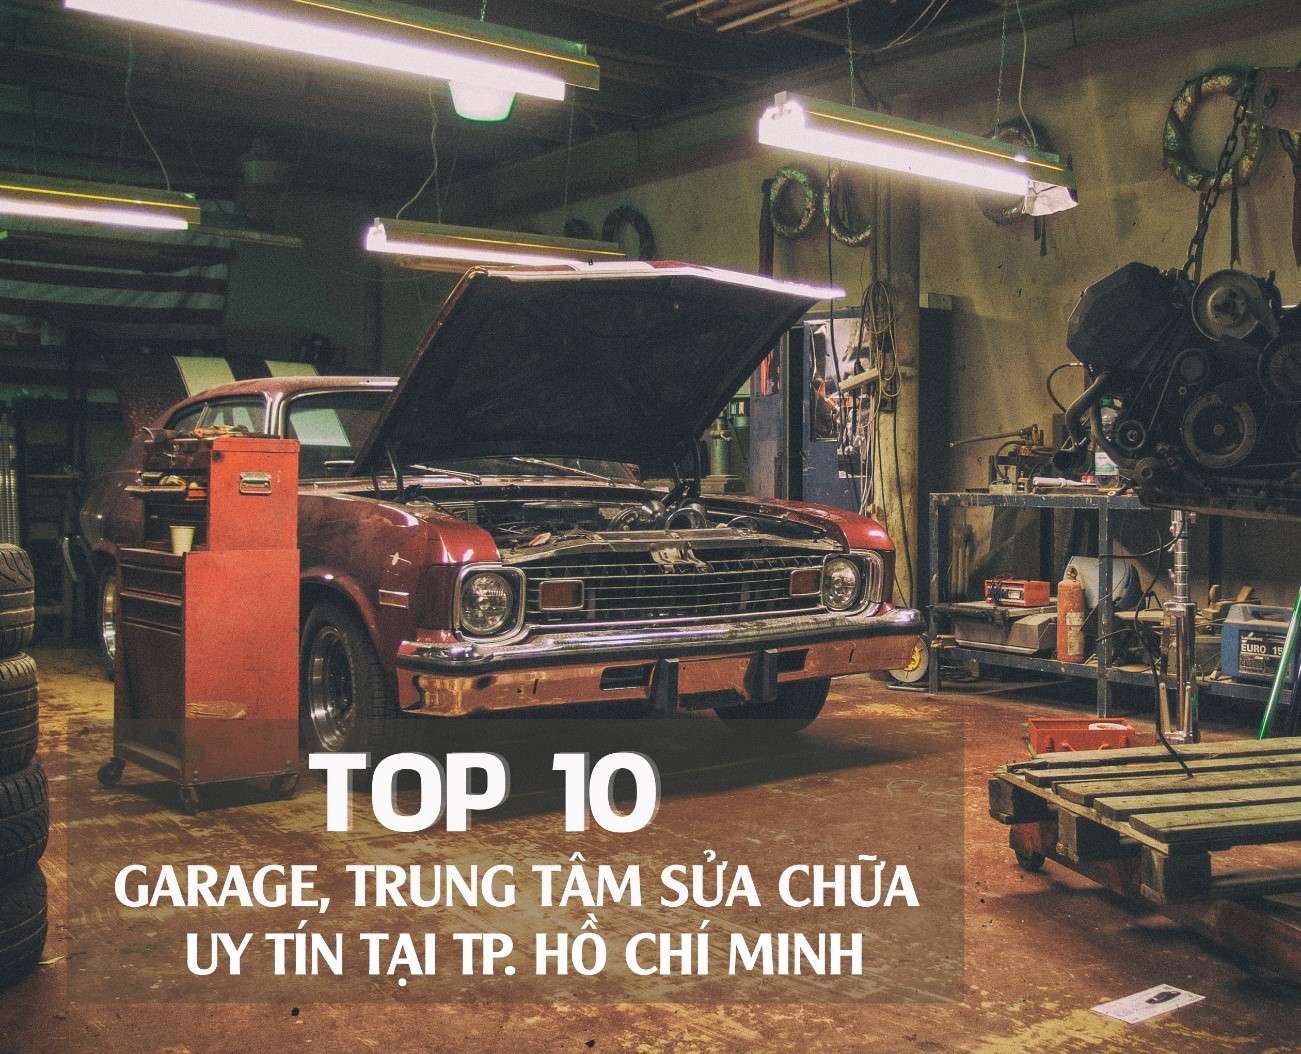 top-10-garage-trung-tam-sua-chua-o-to-uy-tin-tai-thanh-pho-ho-chi-minh-obdvietnam